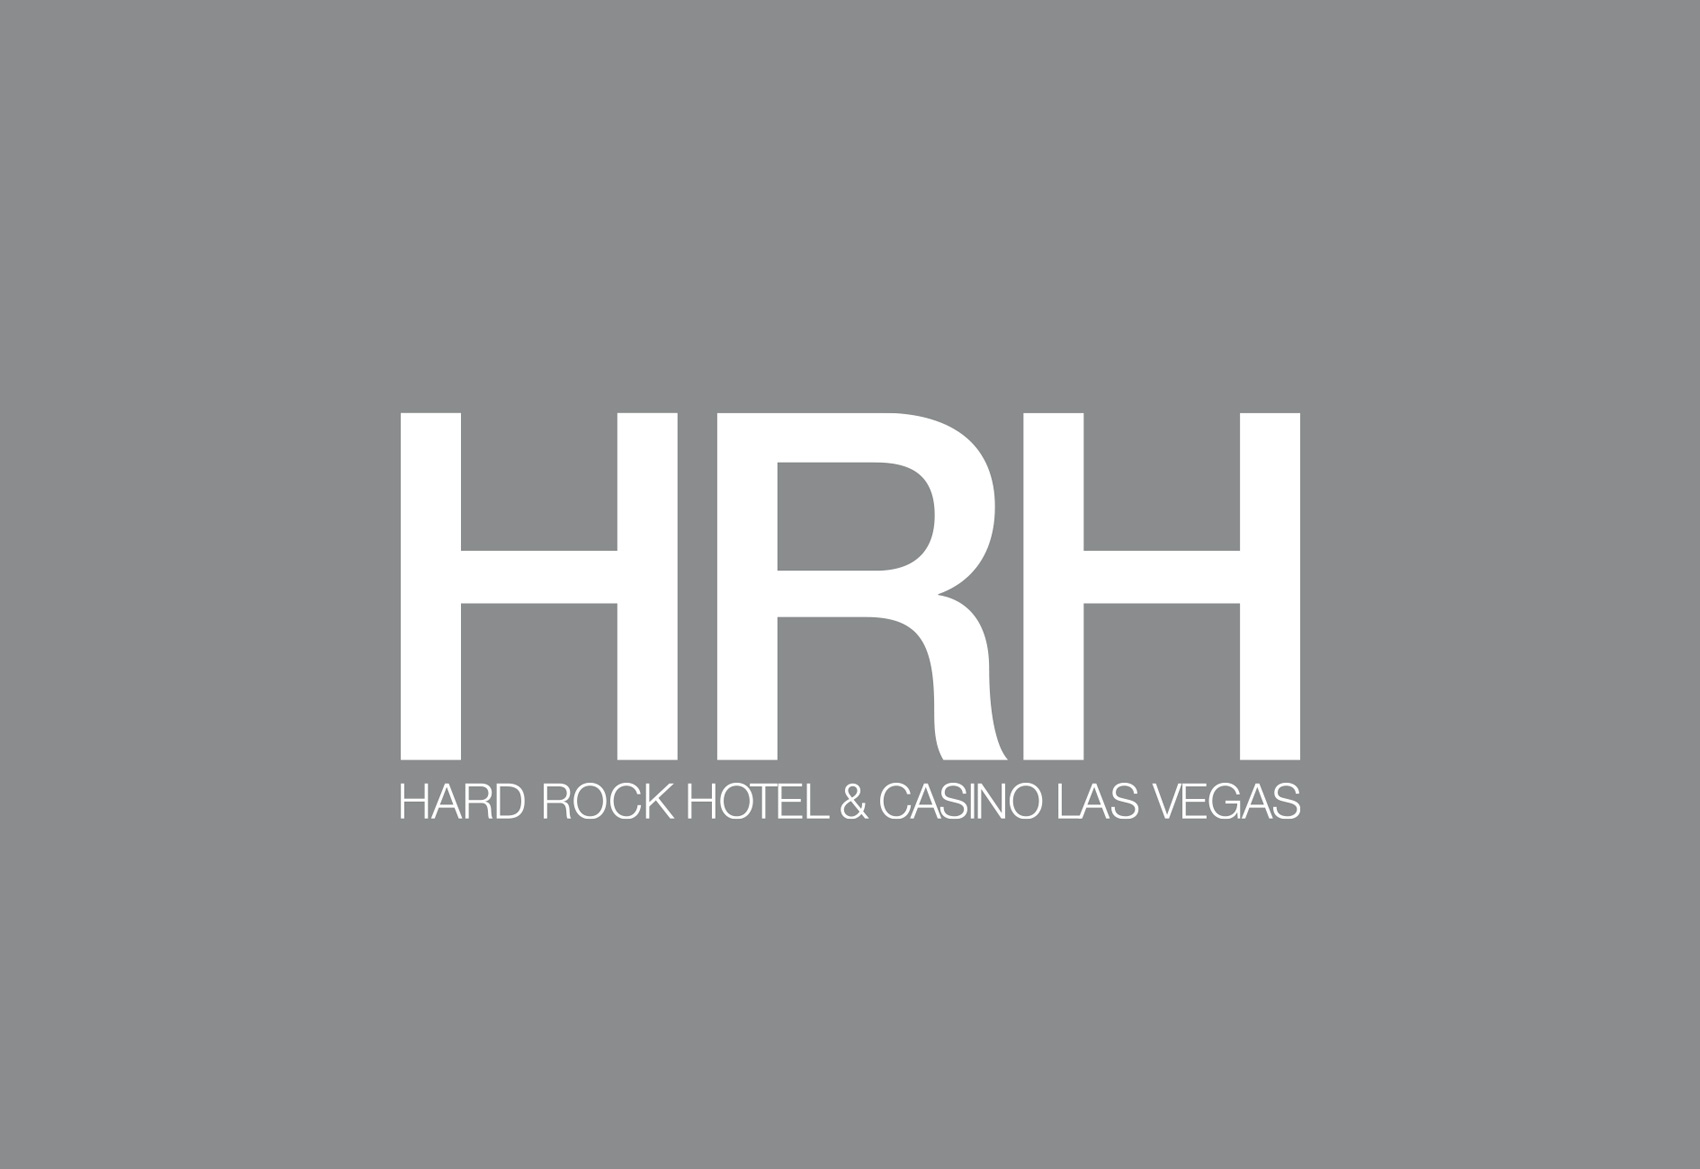 HARD ROCK HOTEL Brand Development by Mark Zeff Design